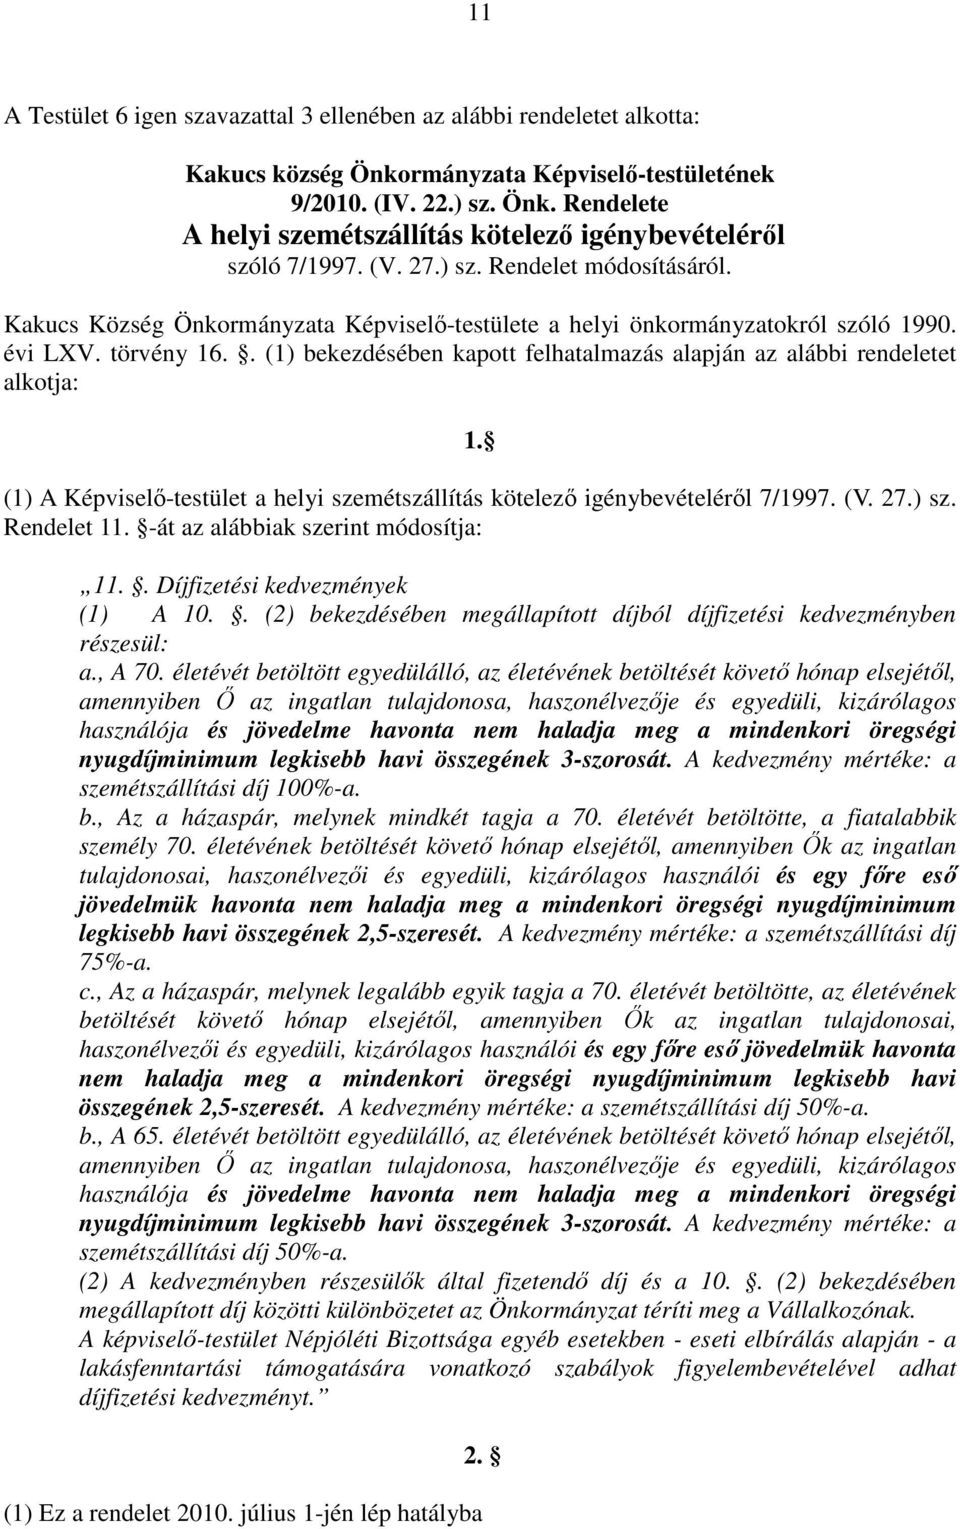 . (1) bekezdésében kapott felhatalmazás alapján az alábbi rendeletet alkotja: 1. (1) A Képviselı-testület a helyi szemétszállítás kötelezı igénybevételérıl 7/1997. (V. 27.) sz. Rendelet 11.